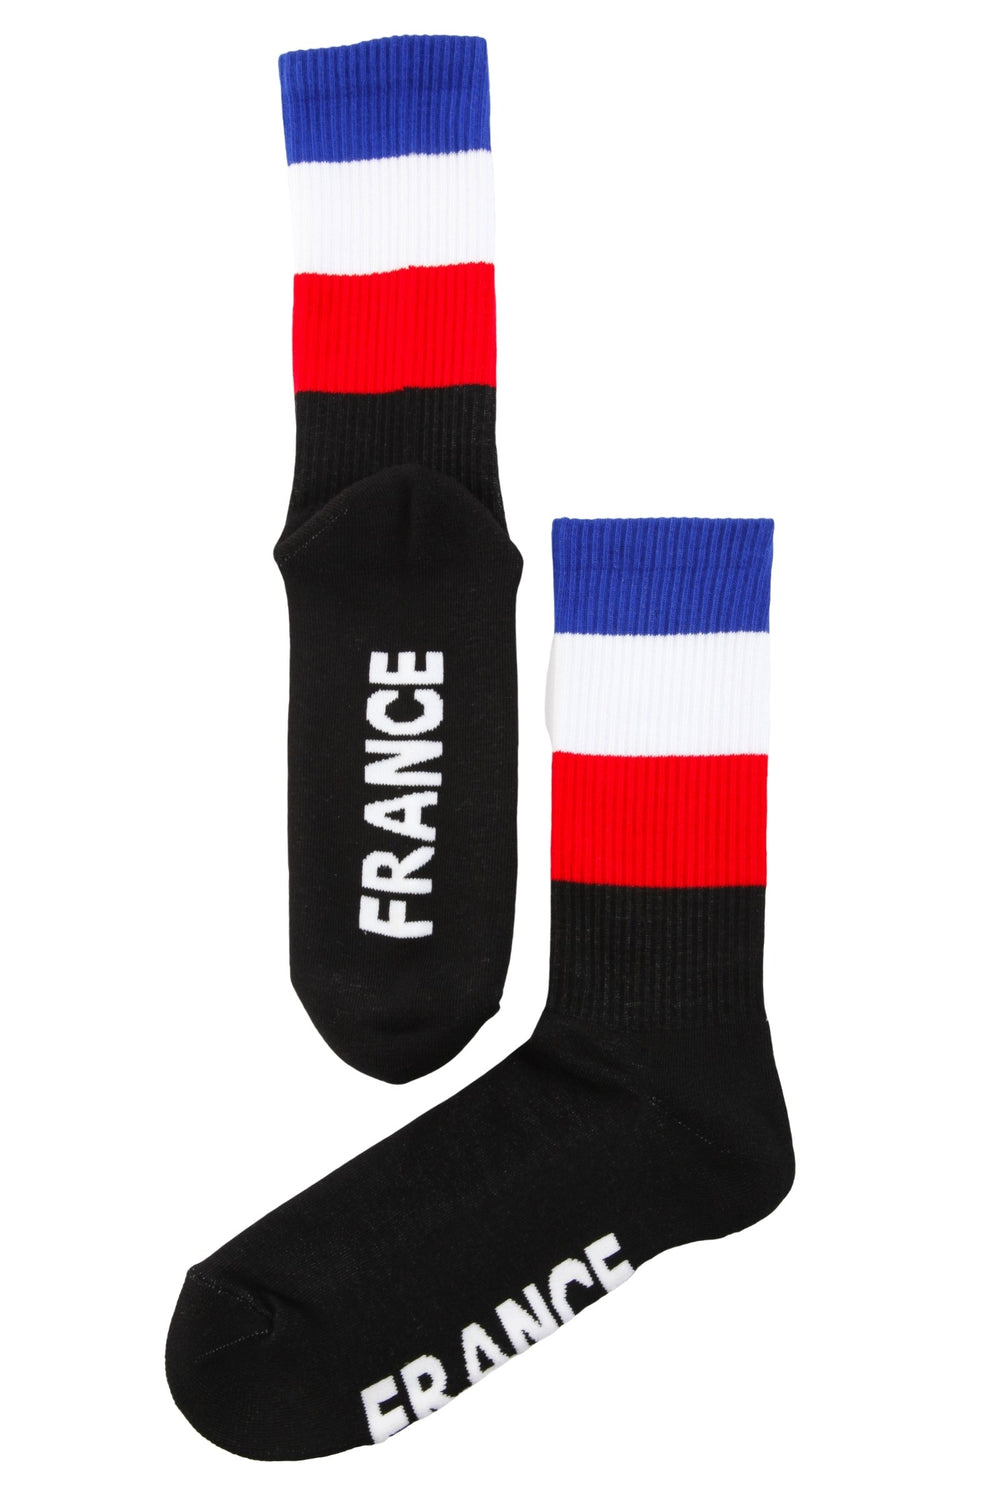 FRANCE flag socks for men and women.